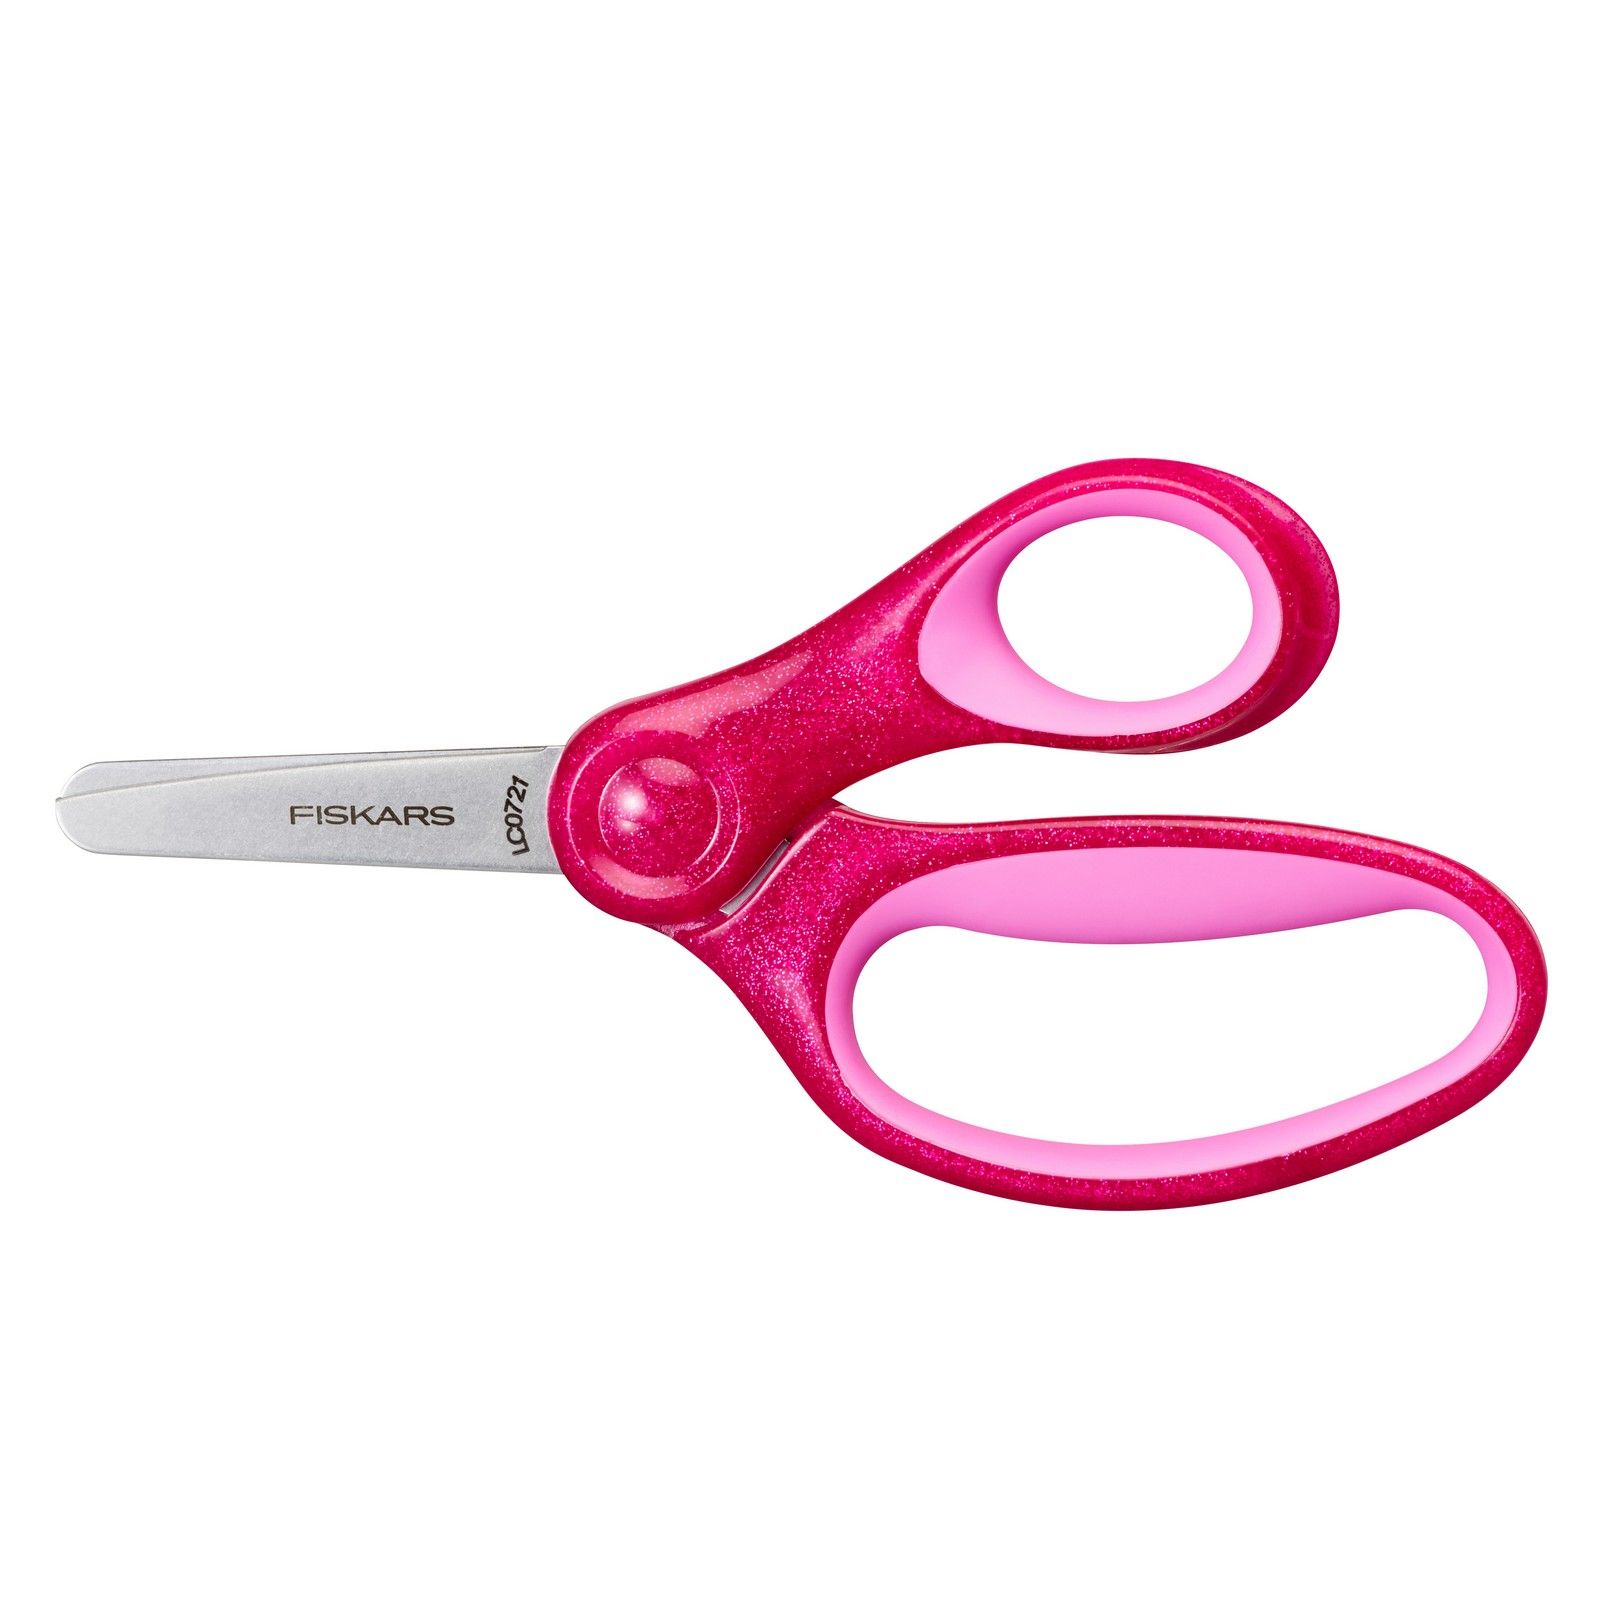 Fiskars • Glitter Kids Scissors Pink 13cm for +6 years old